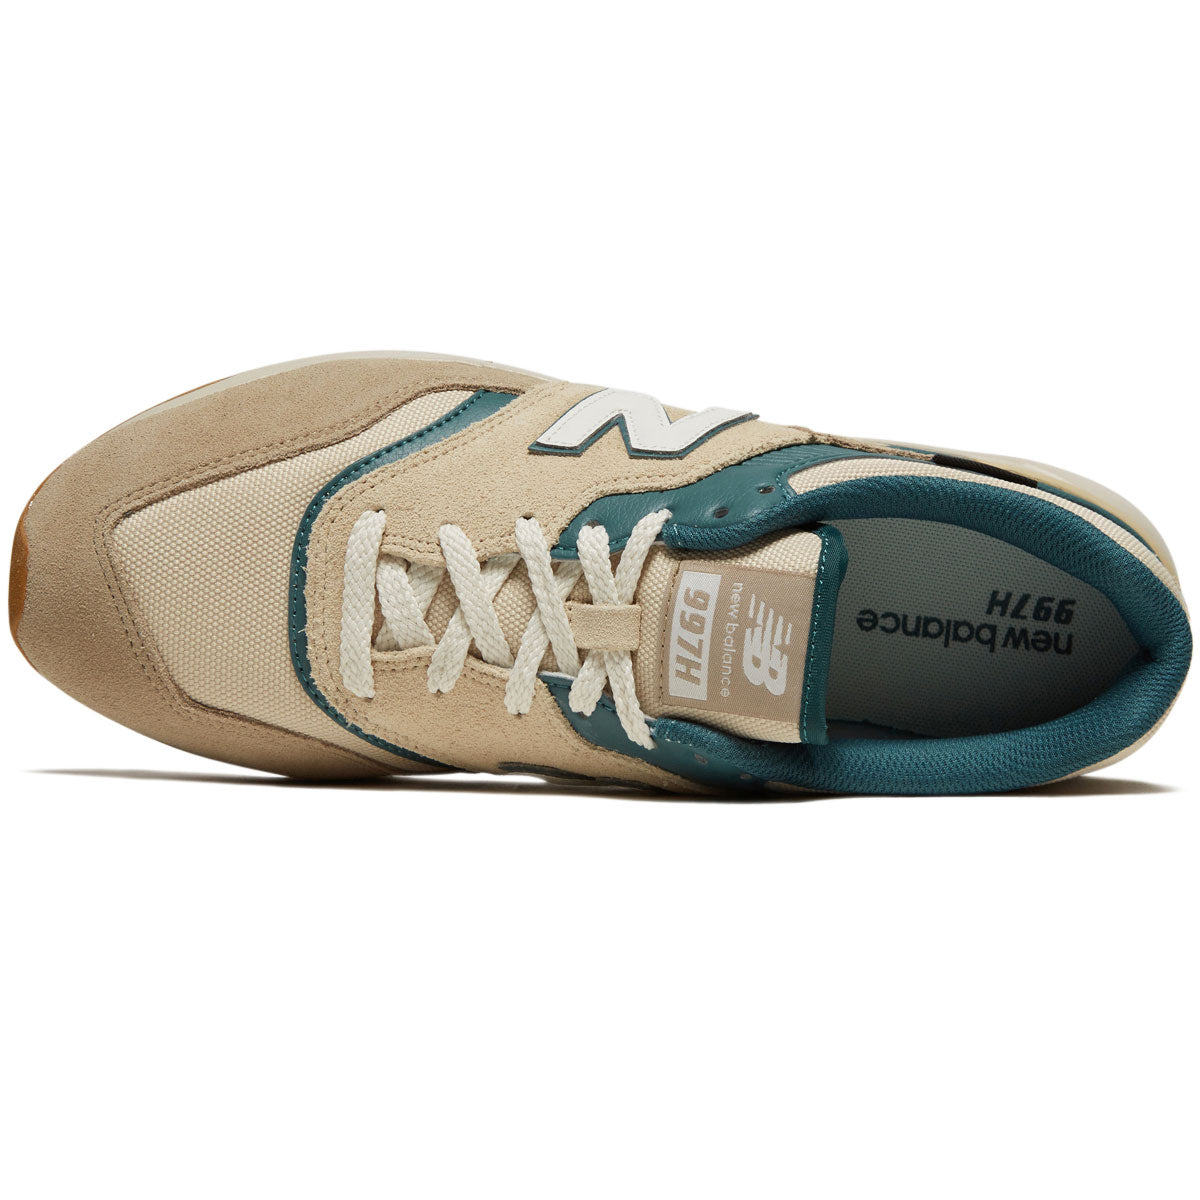 New Balance 997H Shoes - Stoneware/Sandstone/Turtledove/New Spruce image 3